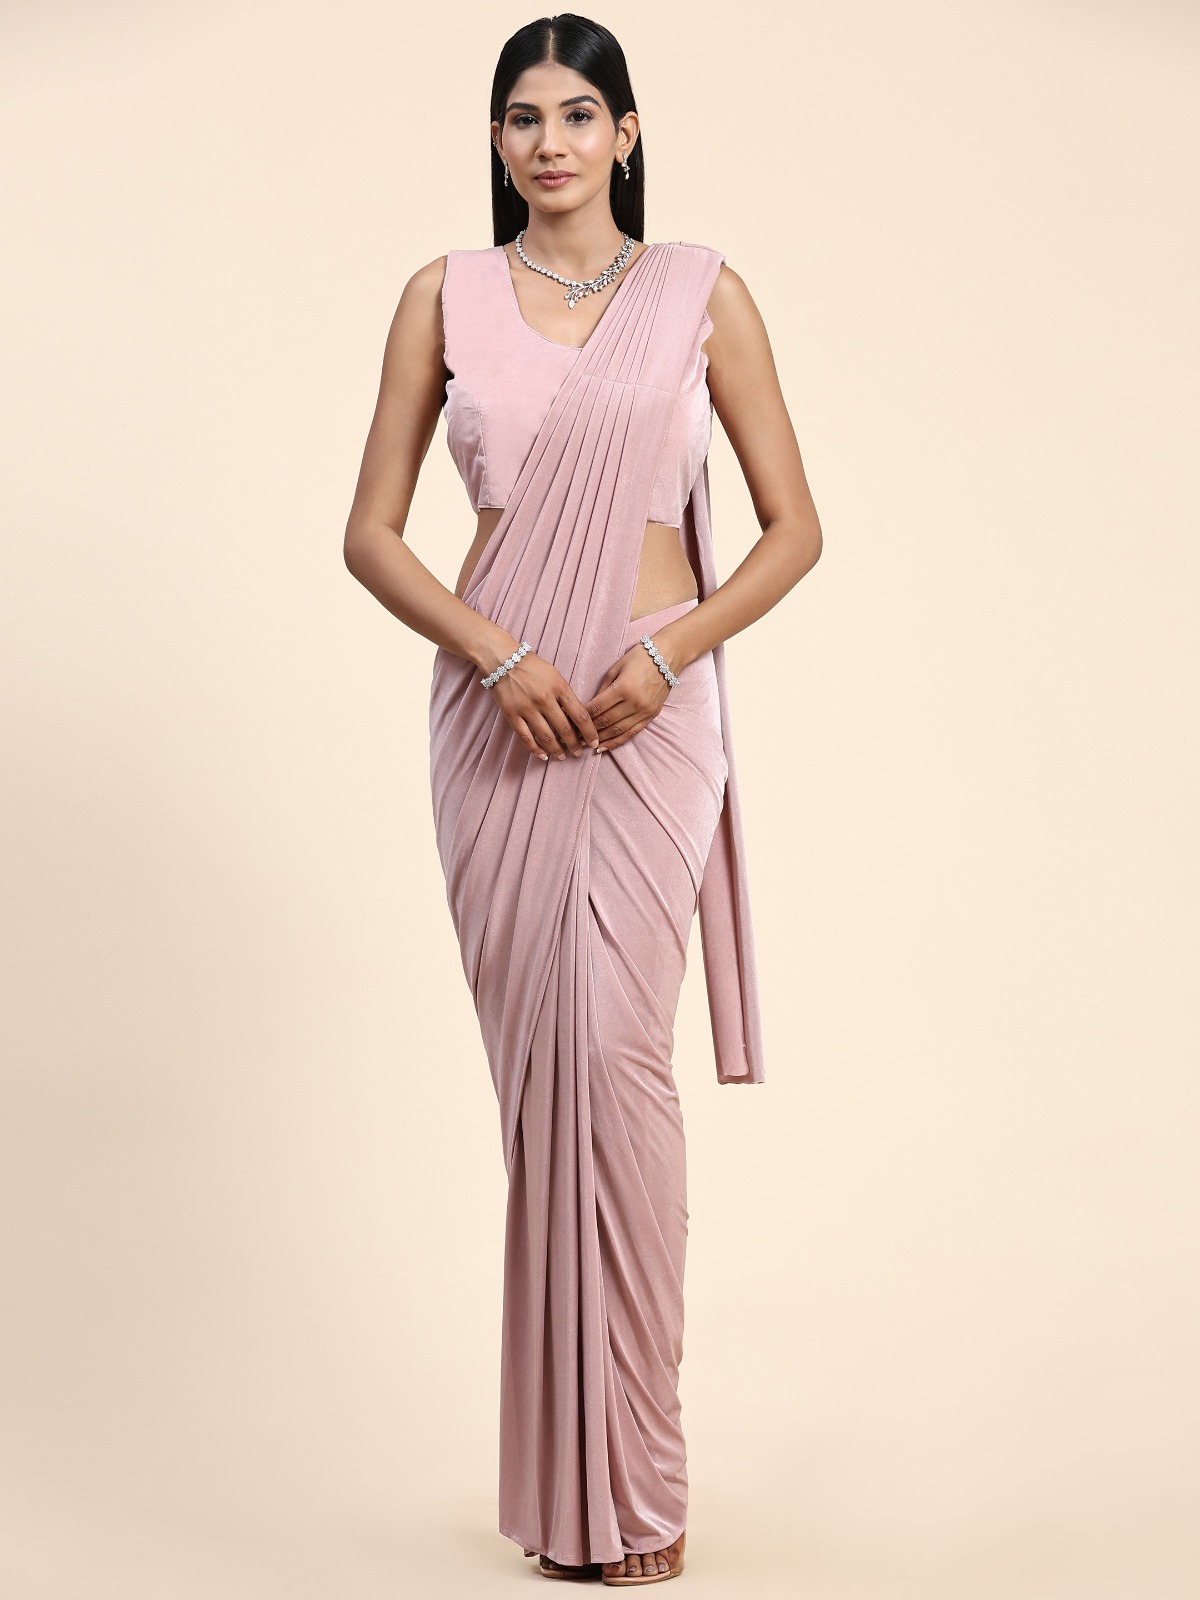 Wedding Designer Saree Online Collection For Women At Best Price  Samyakk